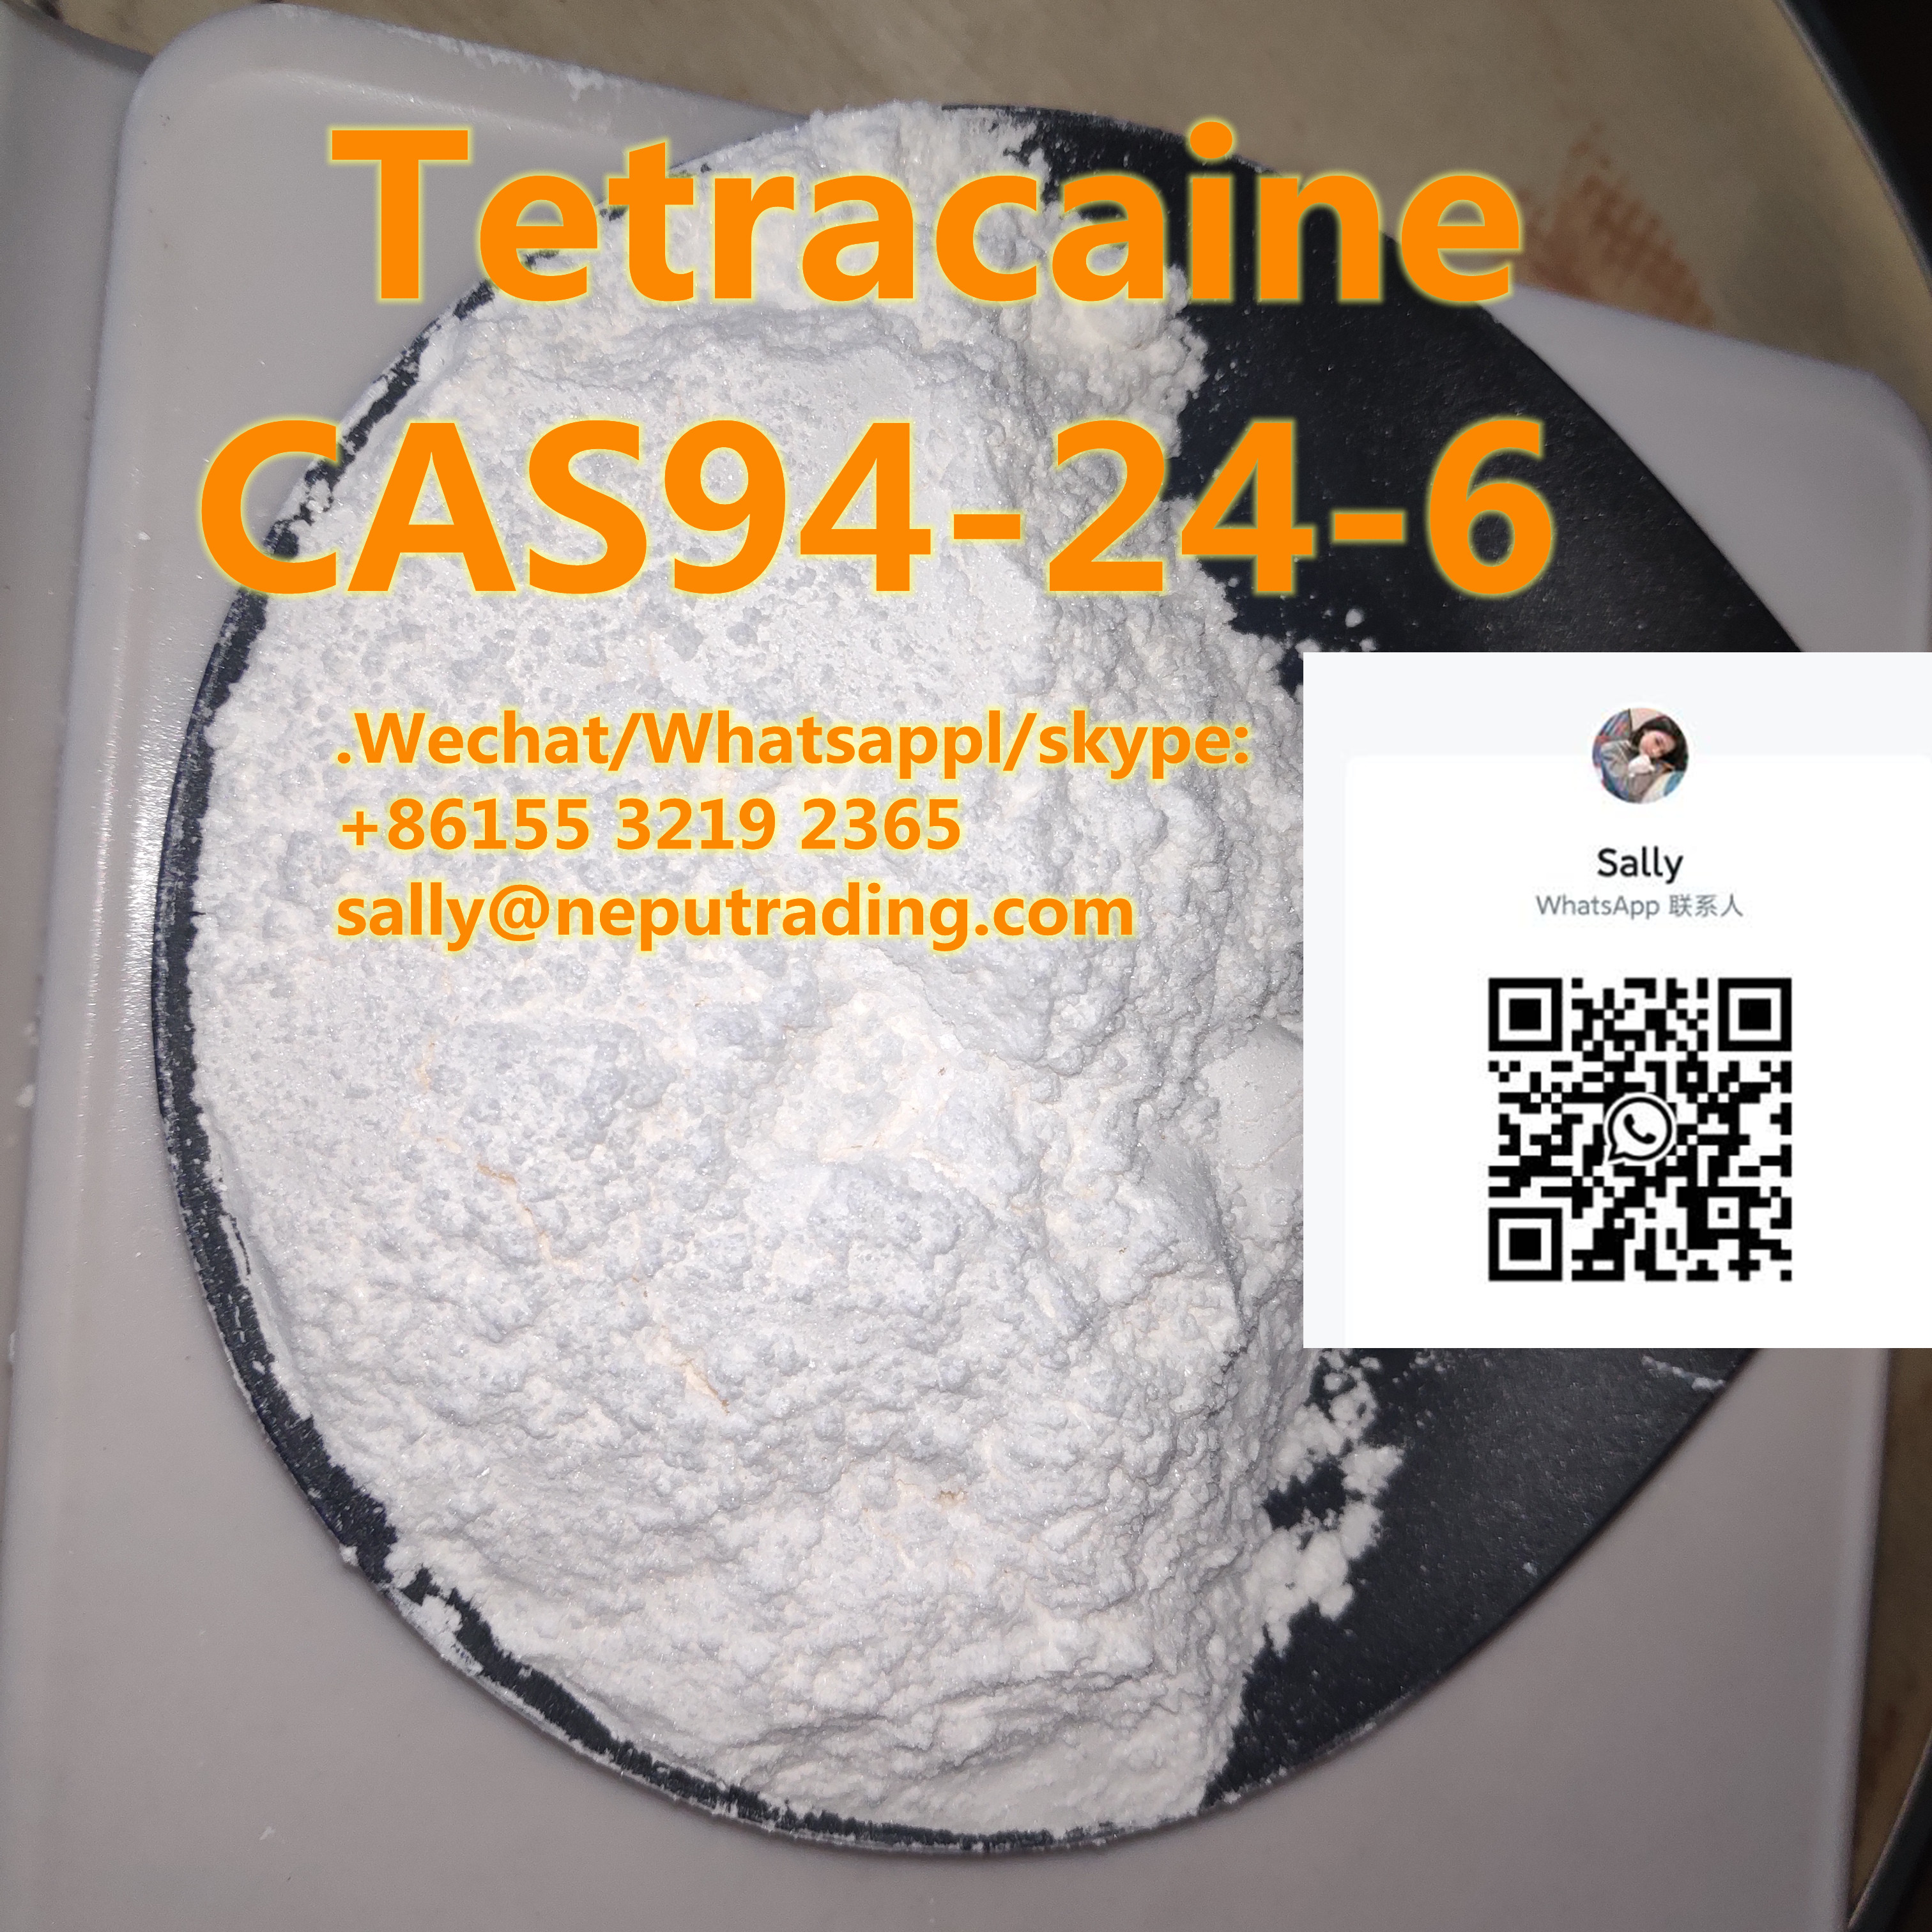  CAS 94-24-6 Tetracaine HCl / Tetracaine Base with Safe Transportation